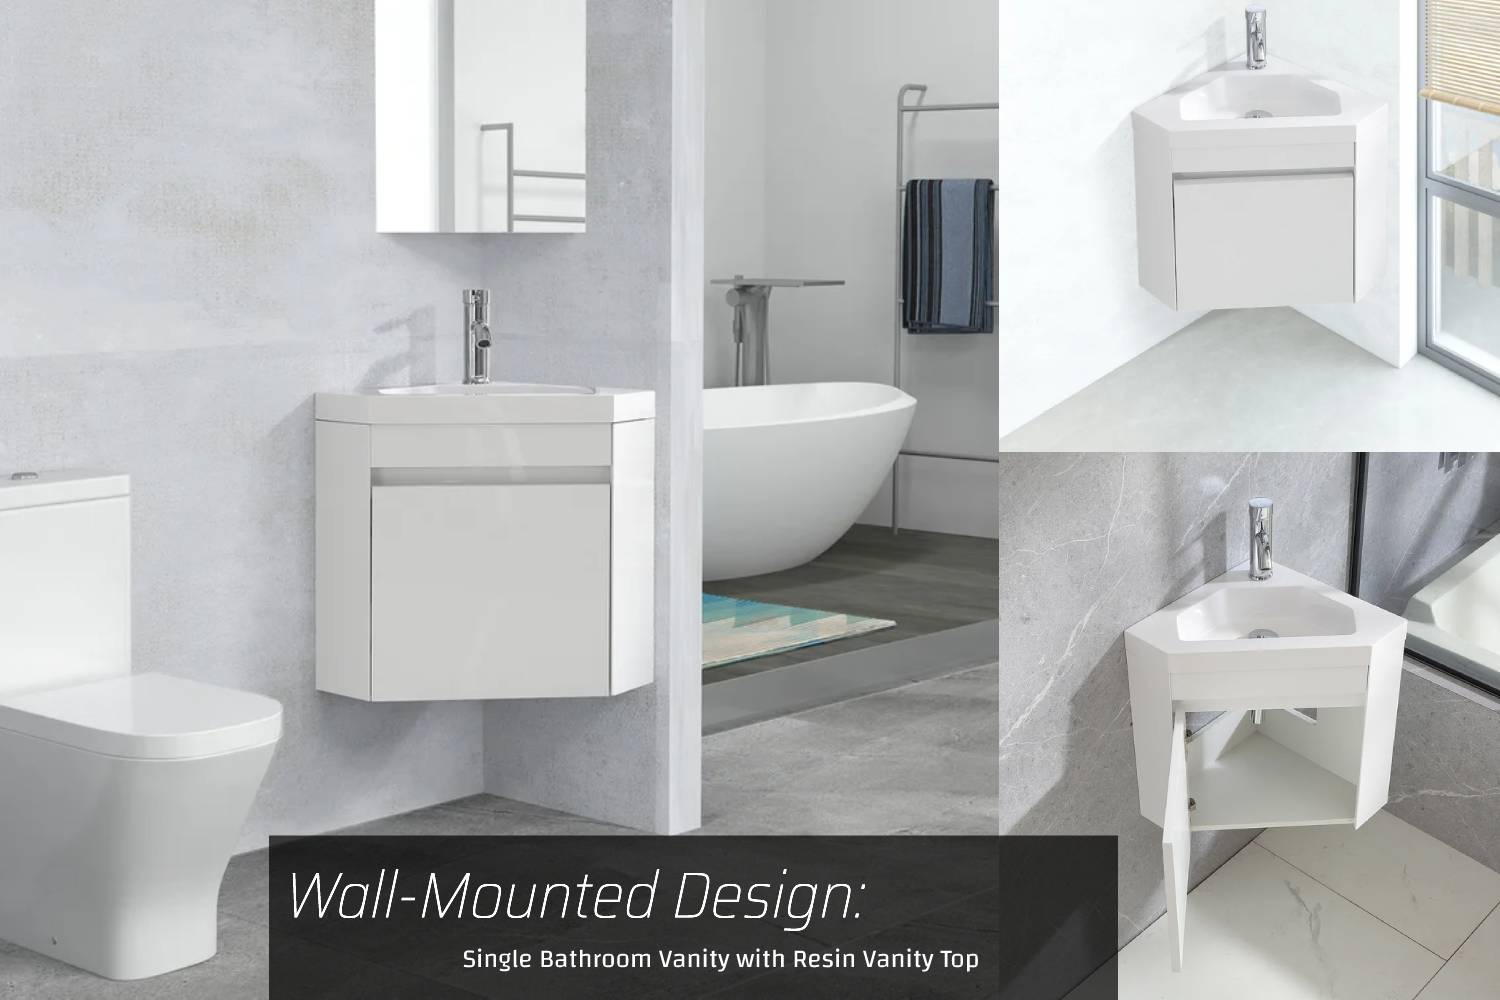 Wall-mounted design single bathroom vanity with resin vanity top